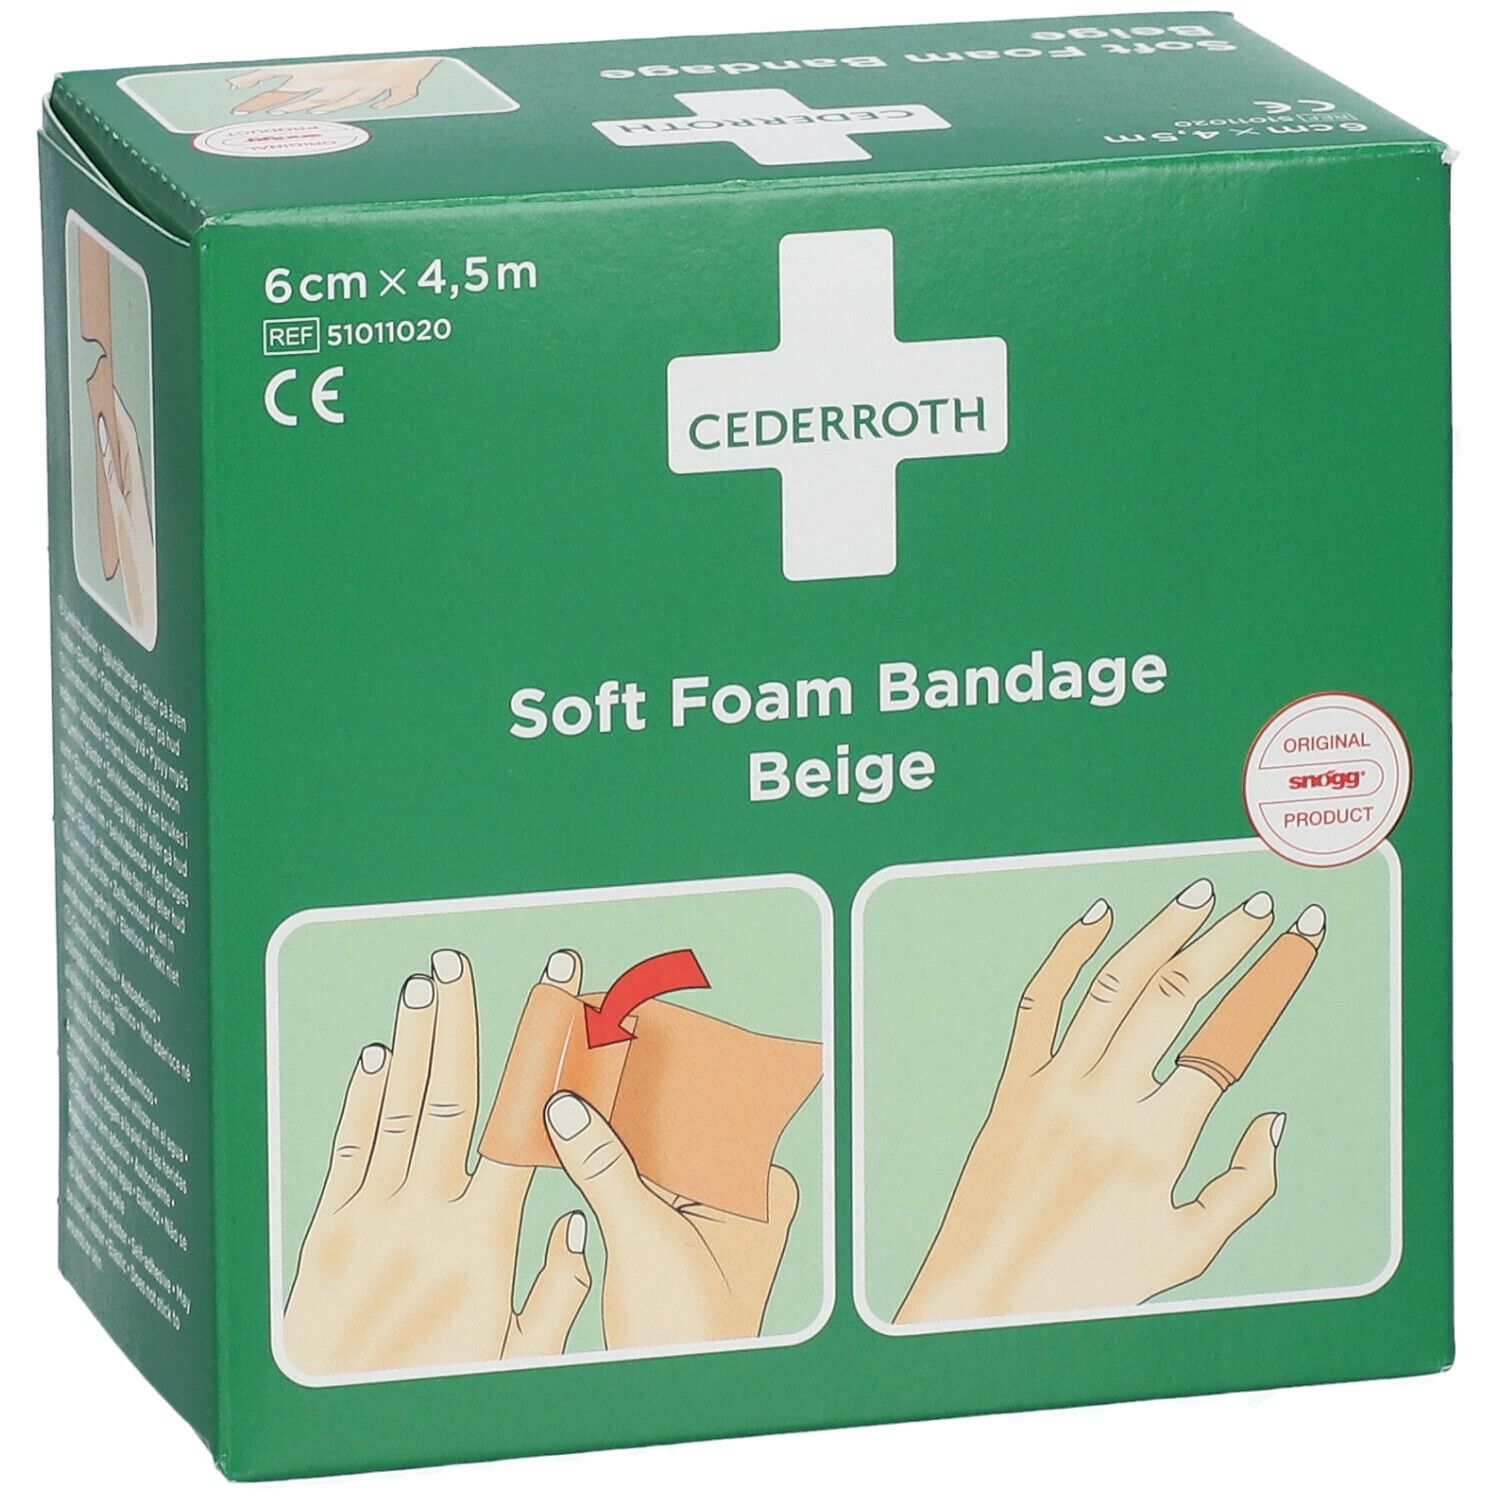 Cederroth Soft Foam Bandage Beige 6 cm x 4,5 m 51011020